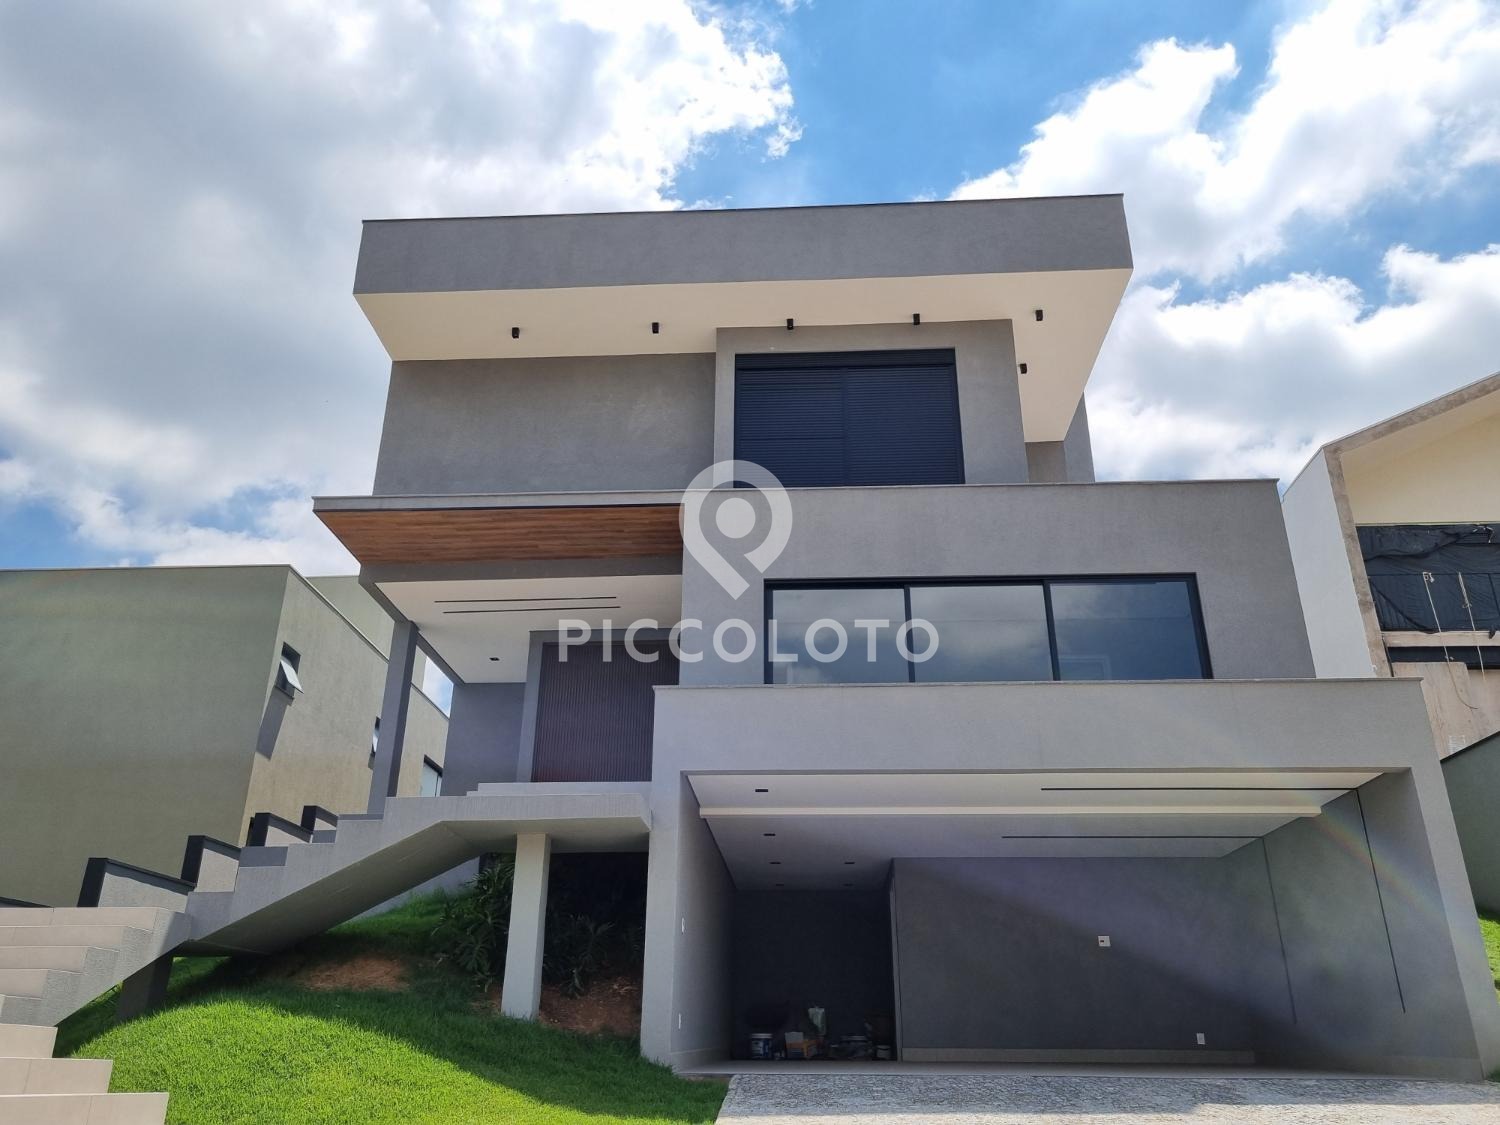 Piccoloto - Casa à venda no Alphaville em Campinas